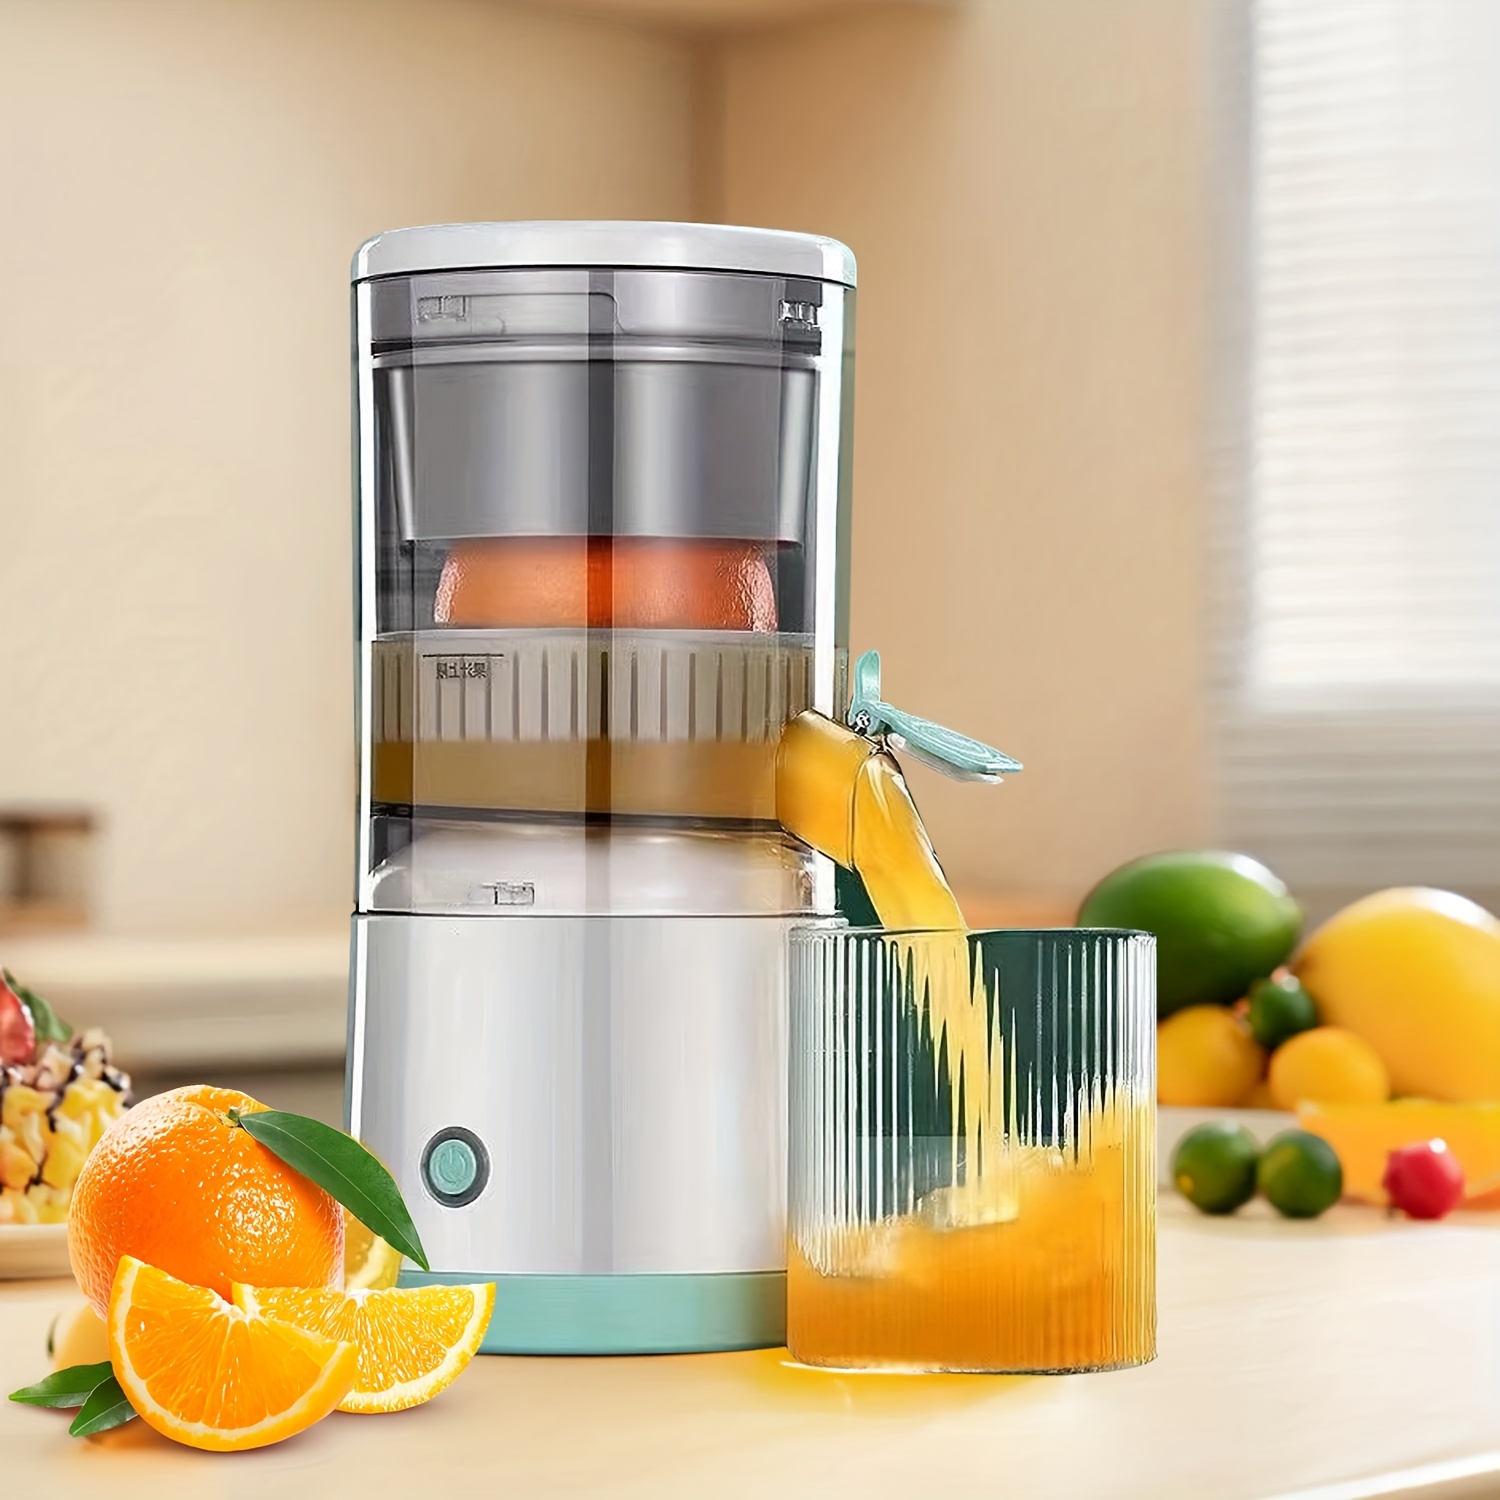 Automatic Orange juice presser;Orange squeeze machine,Citrus Juice Machine